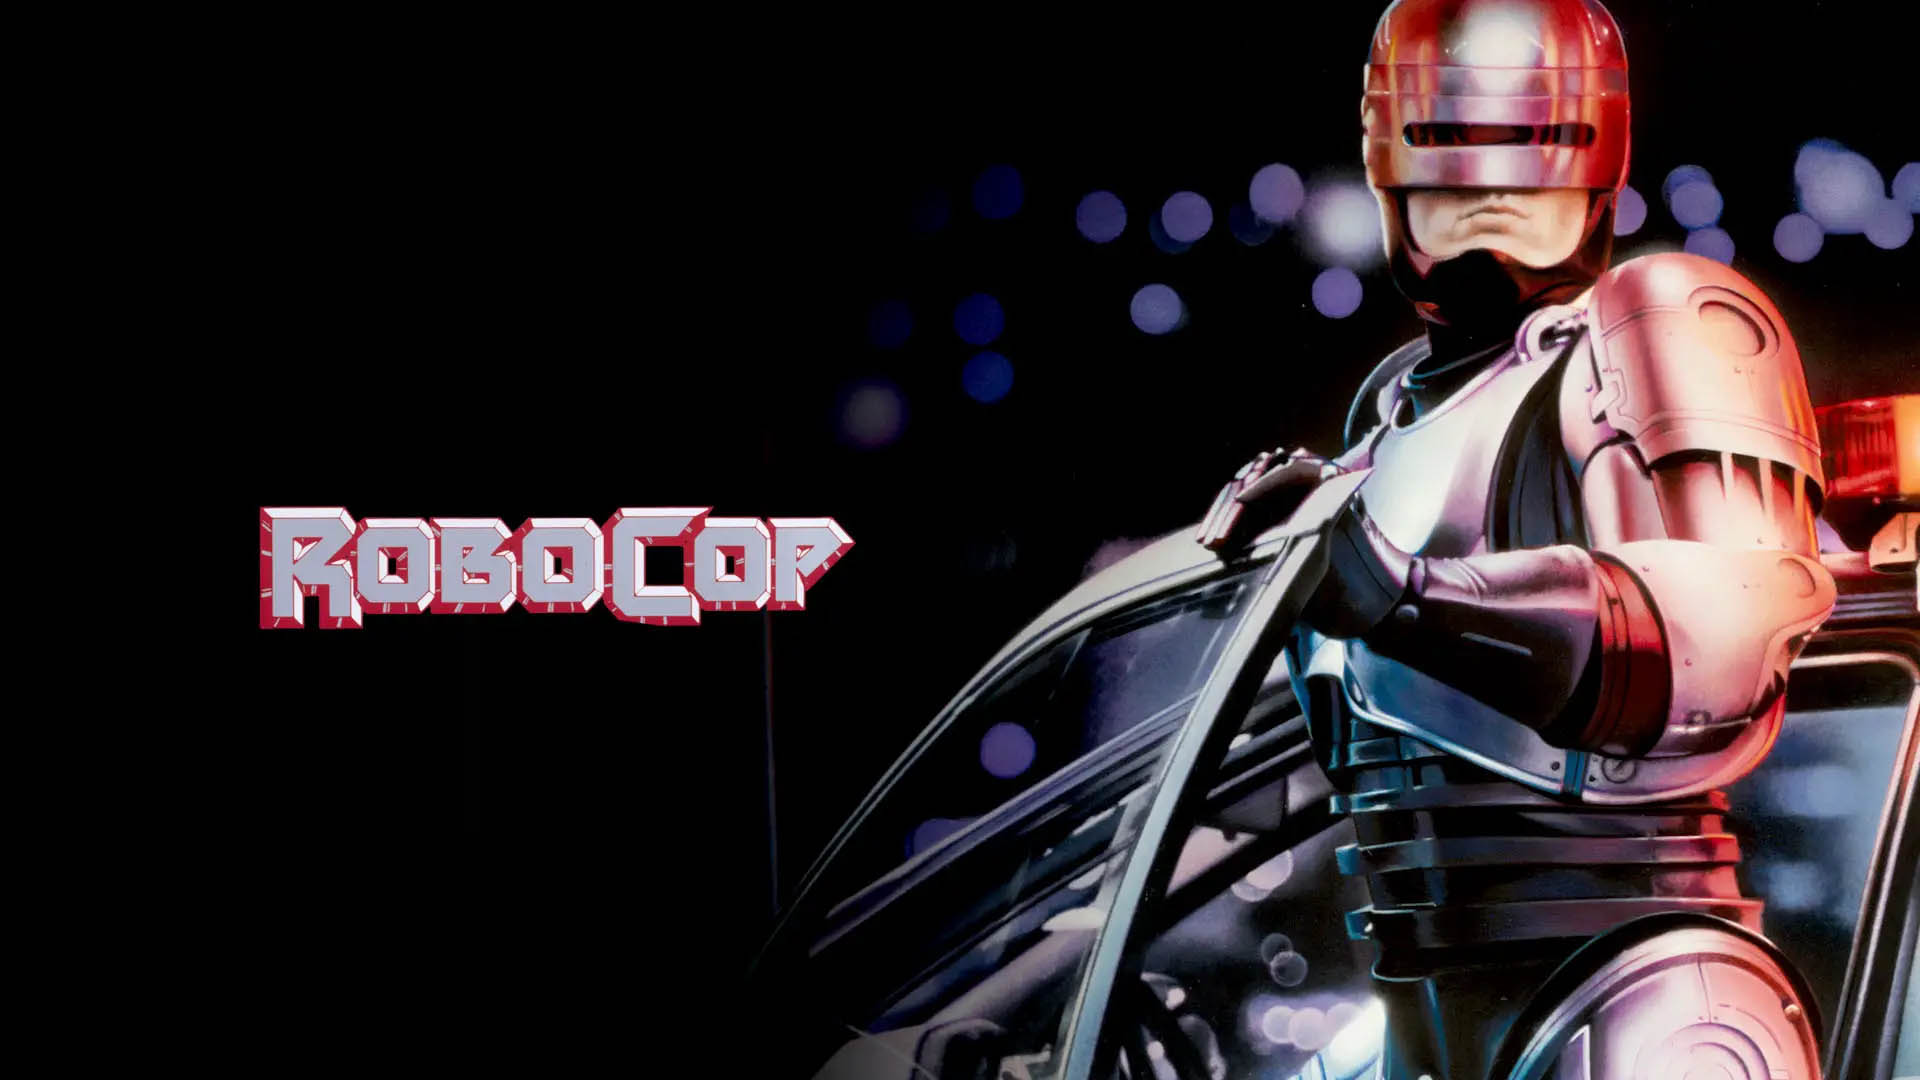 RoboCop (1987)